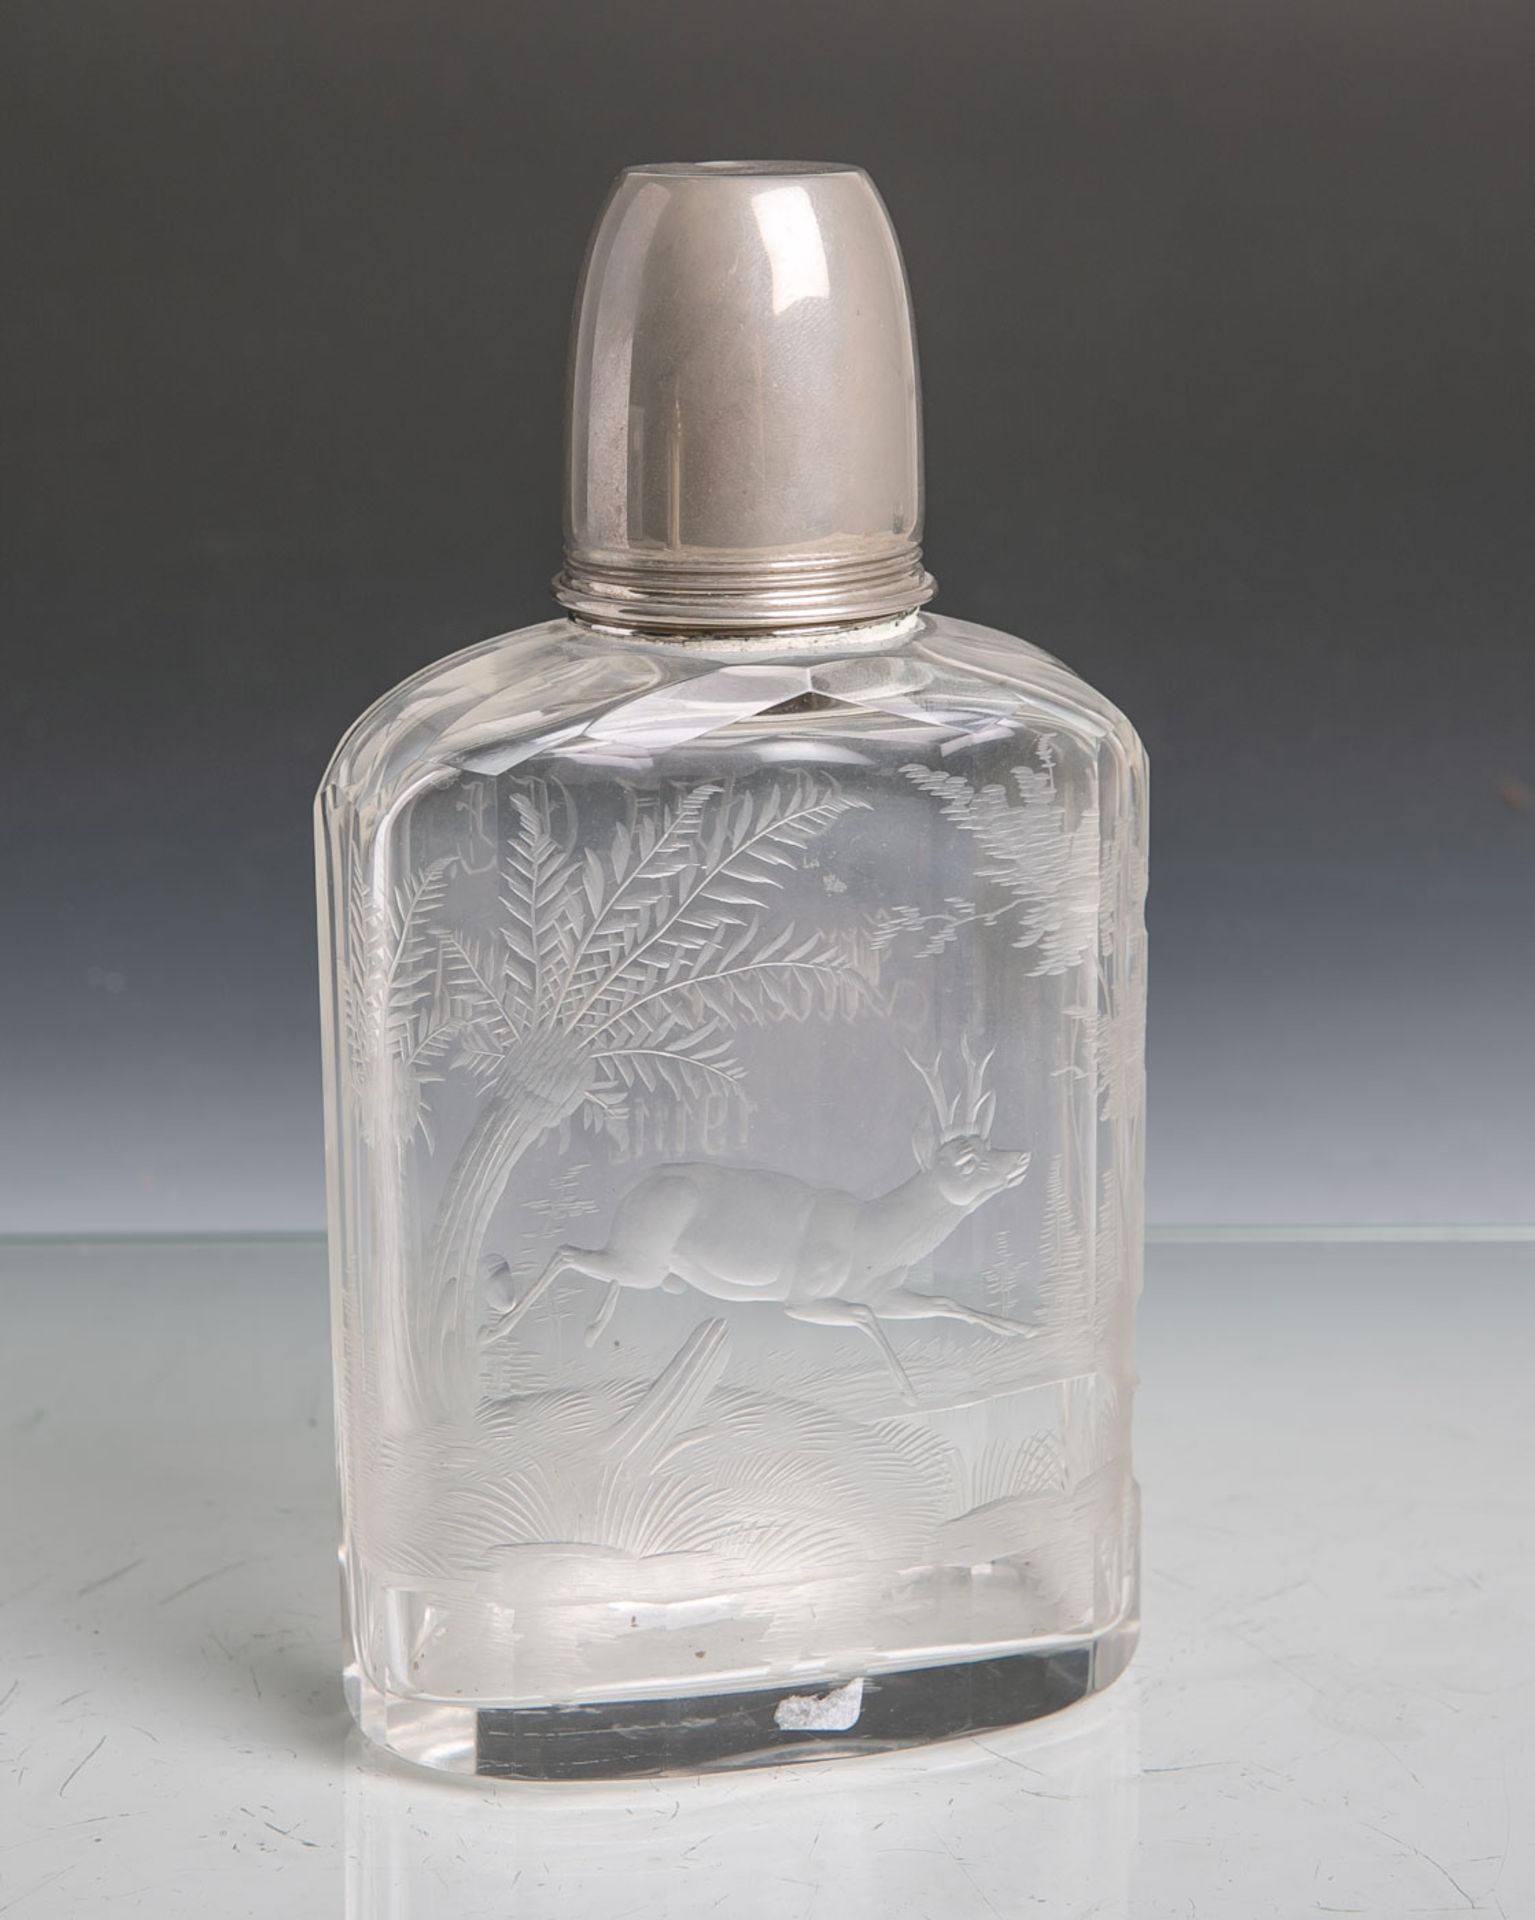 Kristallflasche bzw. Flachmann (19. Jahrhundert), klares Glas m. jagdlicher Gravur,Metallverschluss,